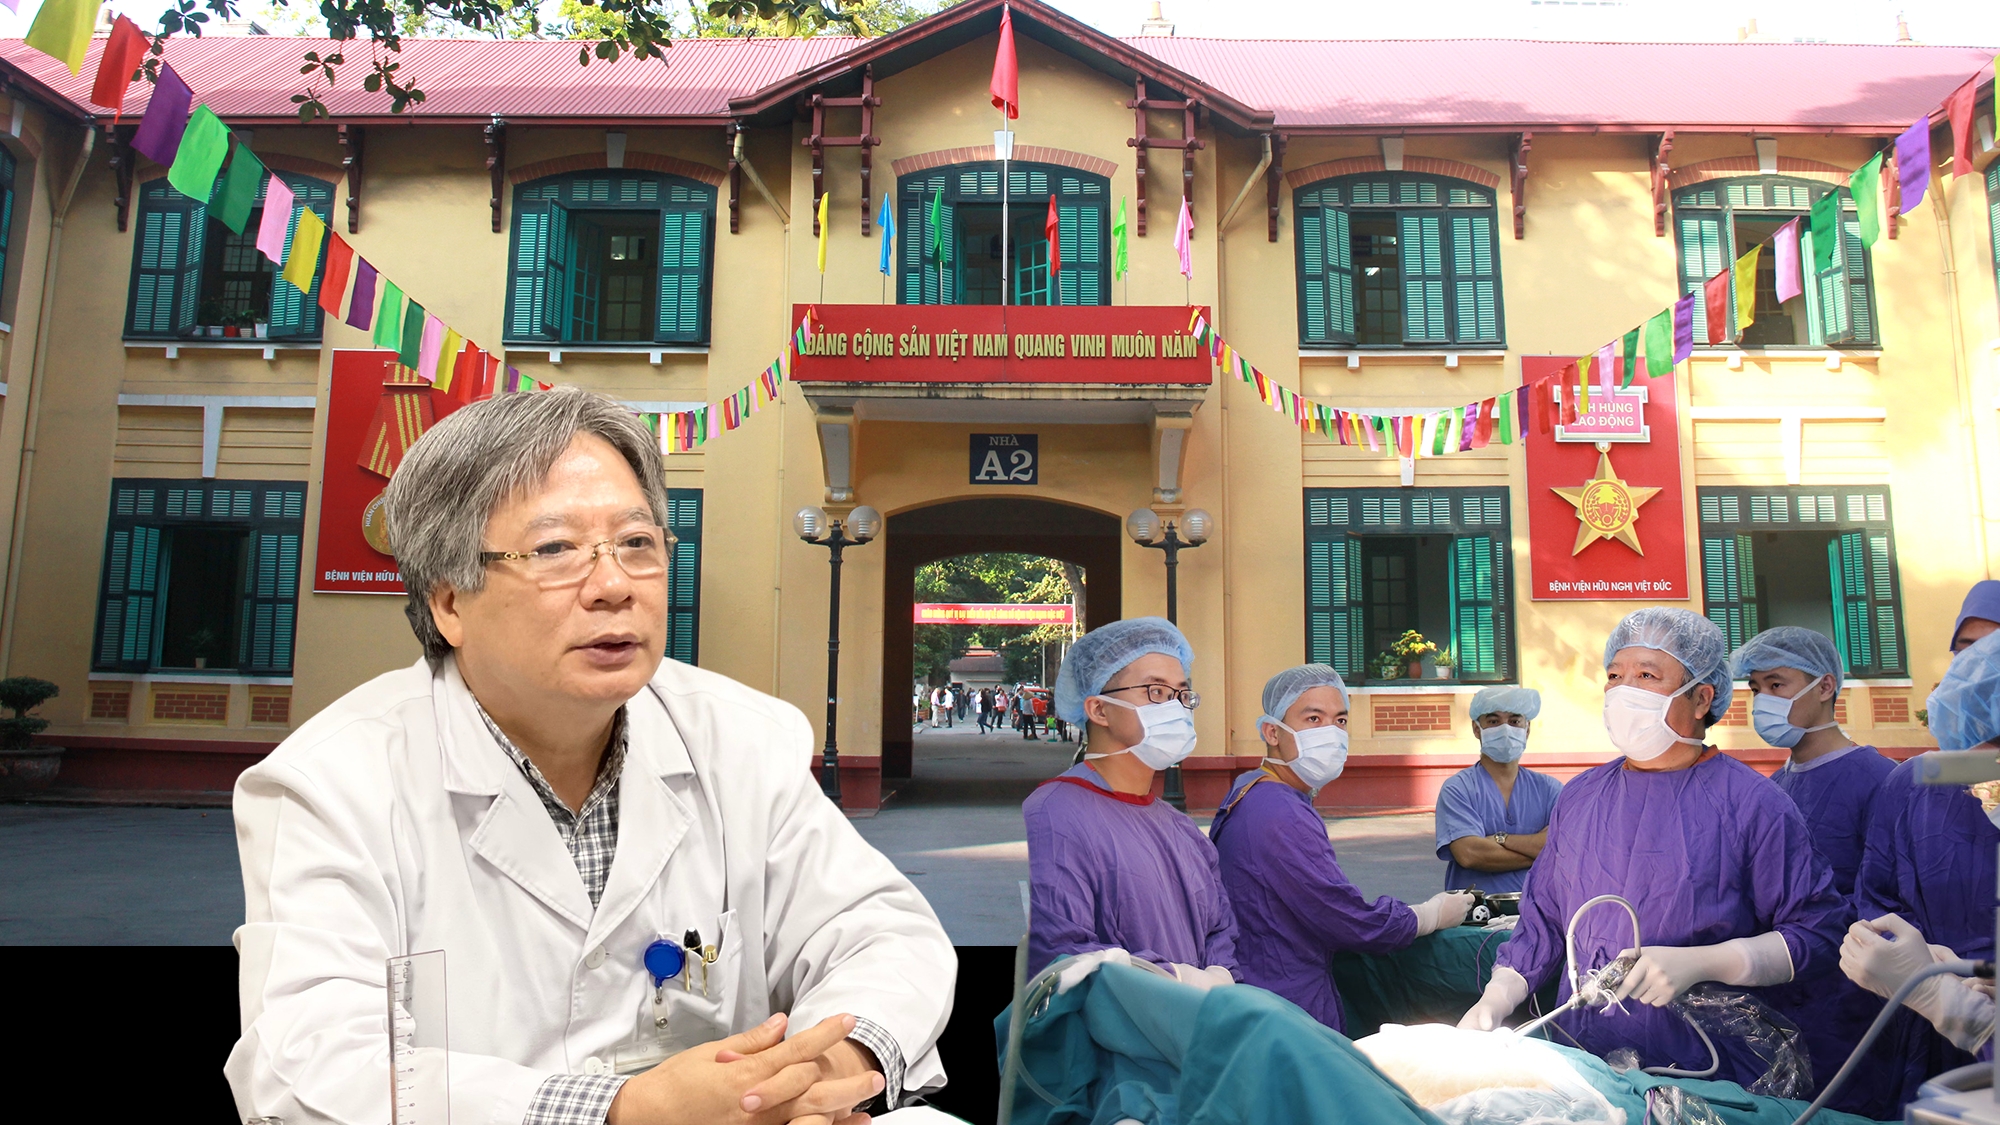 MEGASTORY: GS.Trần Bình Giang và khát vọng đưa Bệnh viện Hữu nghị Việt Đức lên một tầm cao mới